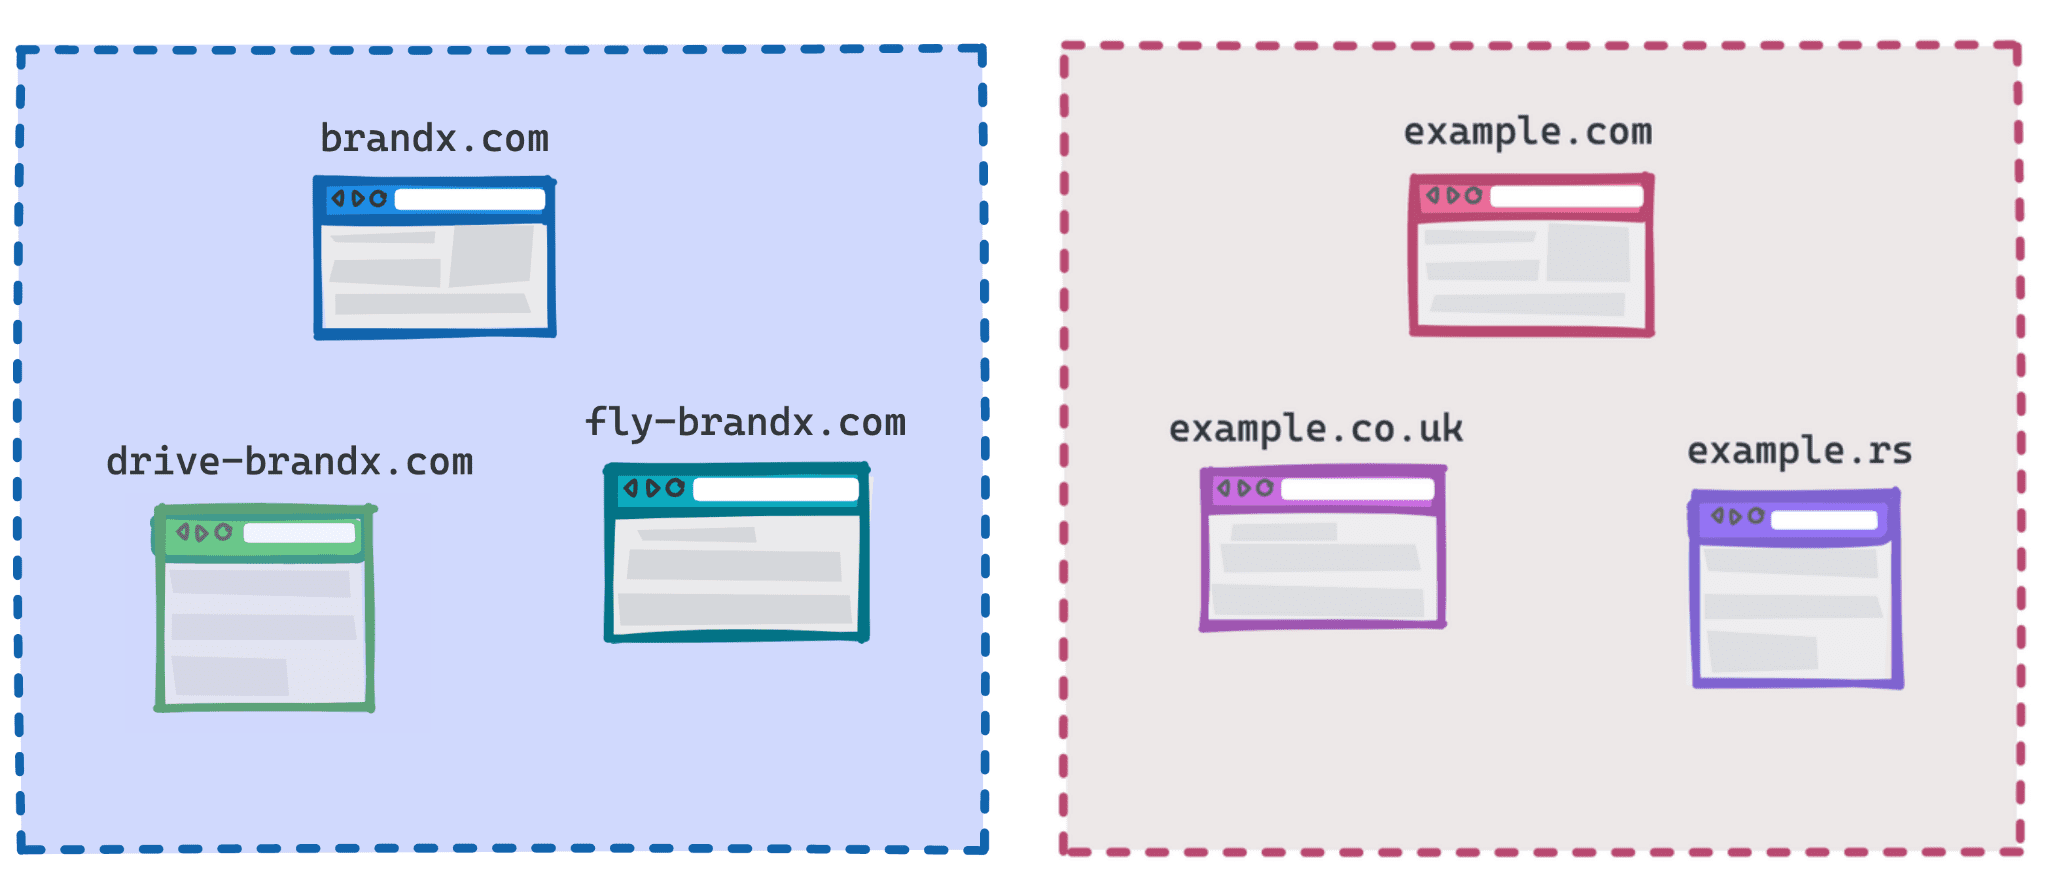 Diagrama mostrando brandx.com, fly-brandx.com e drive-brandx.com como um grupo e example.com, example.rs e example.co.uk como um grupo.